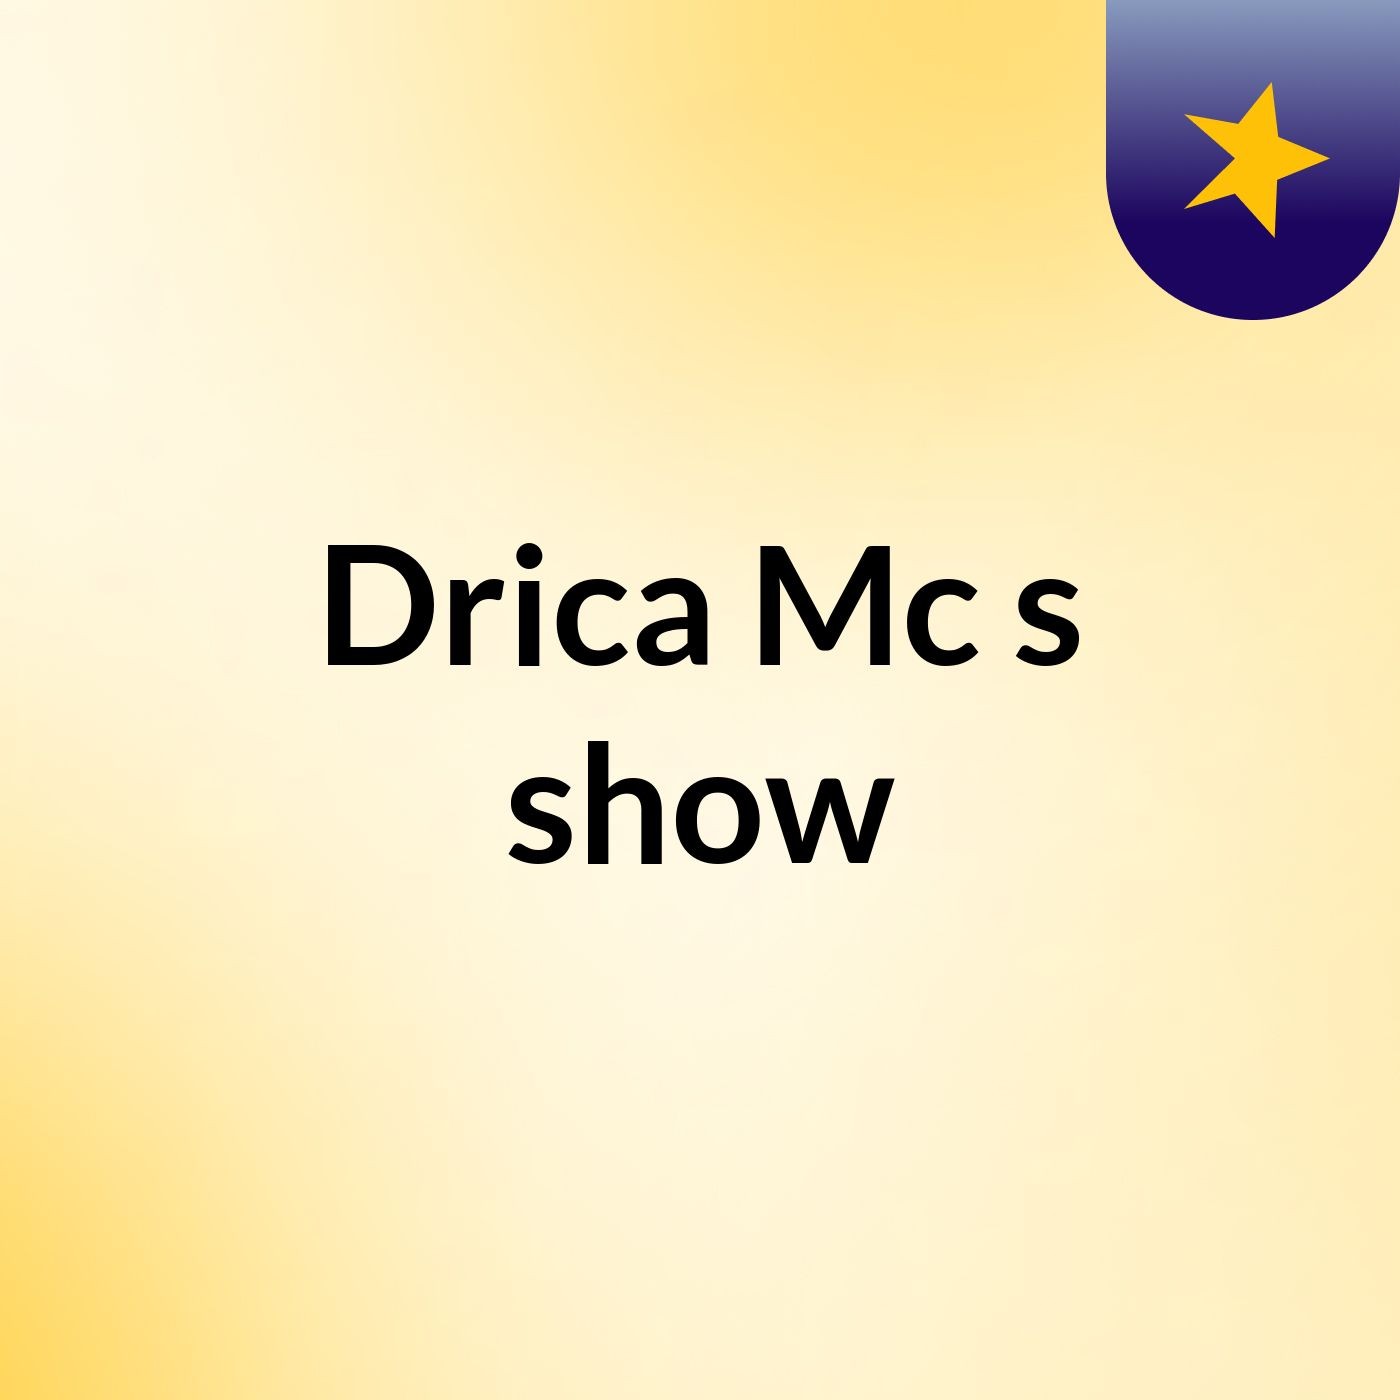 Drica Mc's show